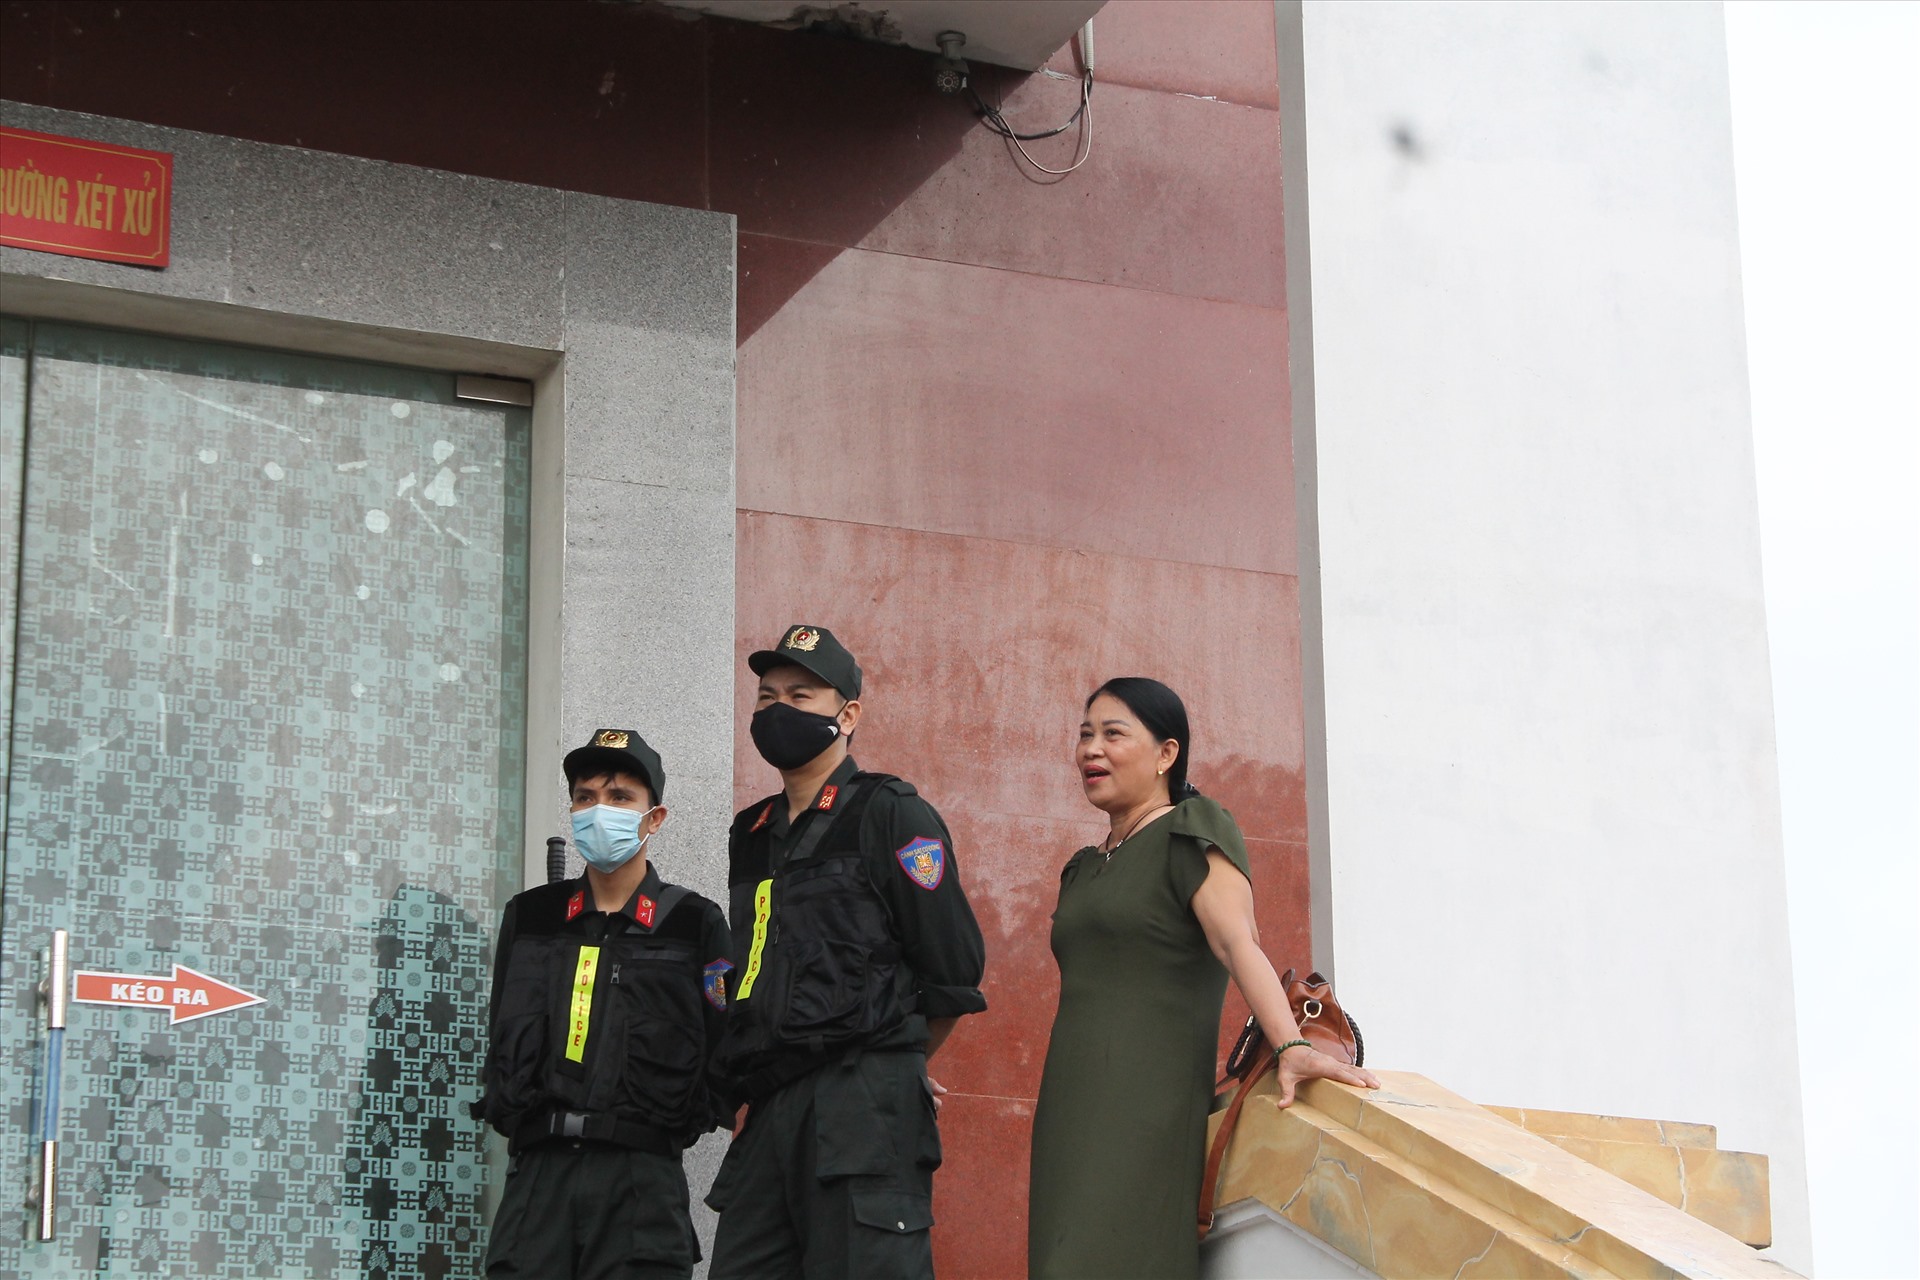 Bà Đinh Thị Lý, người từng tố cáo Nguyễn Xuân Đường hành hung bà và con trai ngay tại trụ sở công an cũng có mặt tại tòa. Ảnh MD